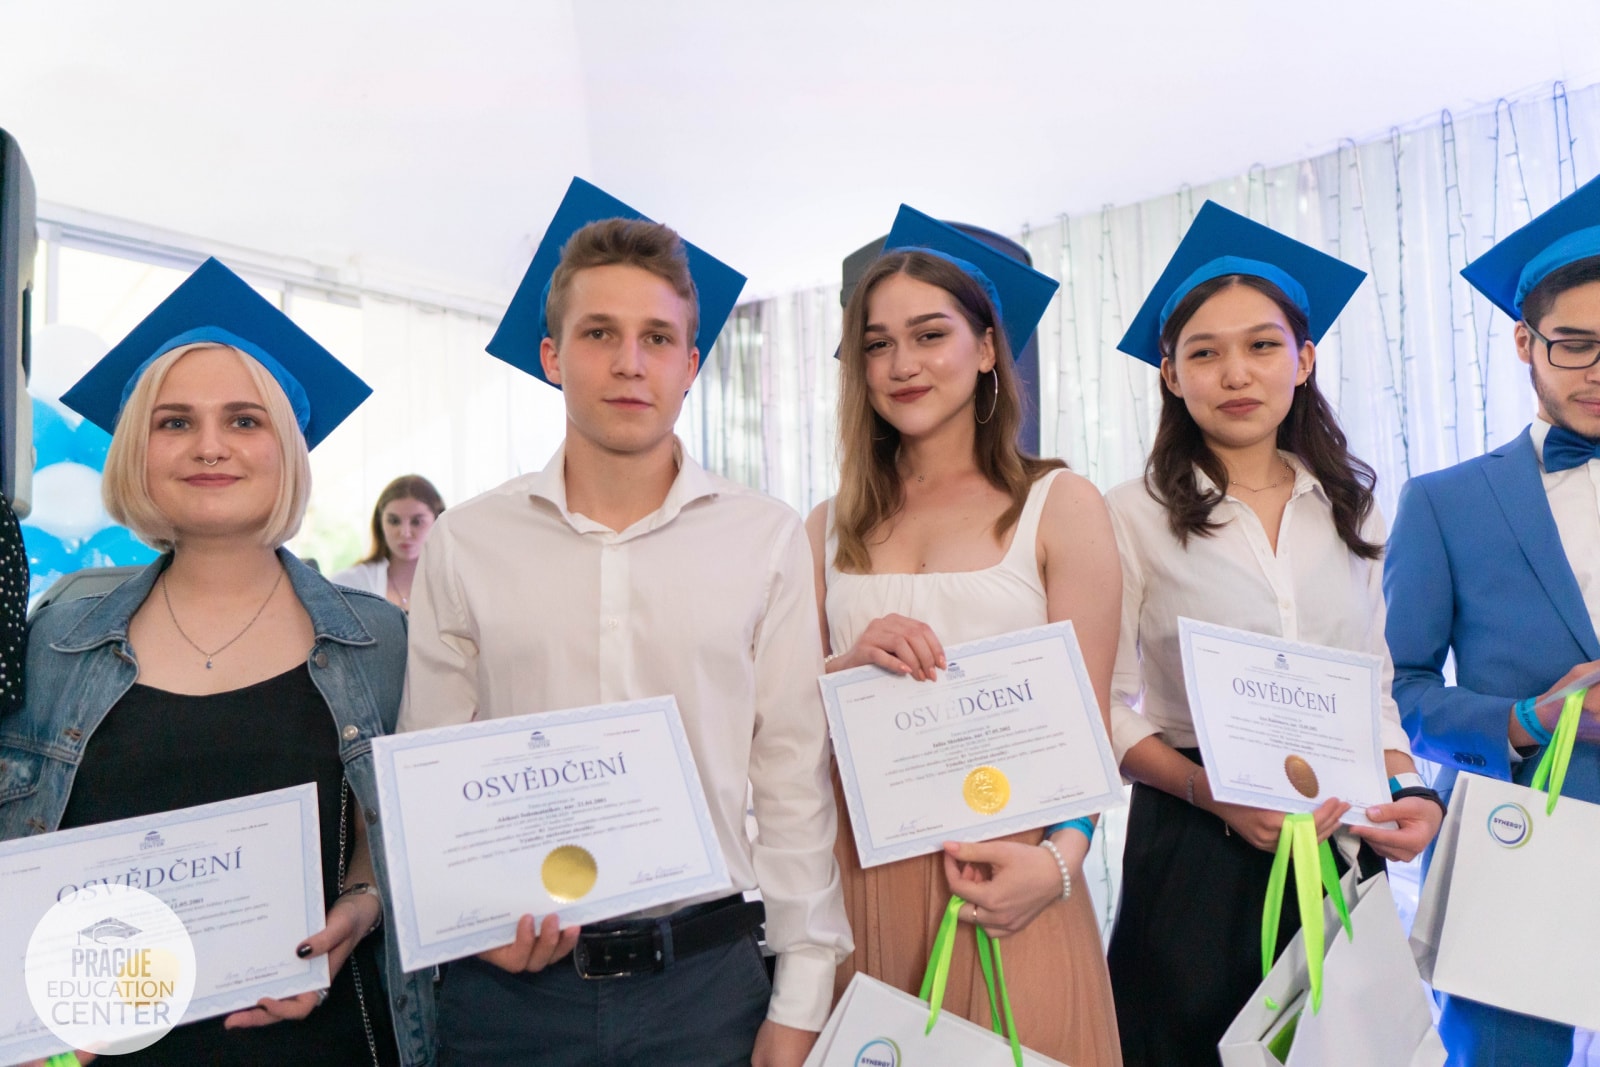  Год за годом, студенты со всего мира выбирают Австрию для получения высшего образования, привлекаемые качественной программой обучения и великолепной репутацией страны в сфере образования.